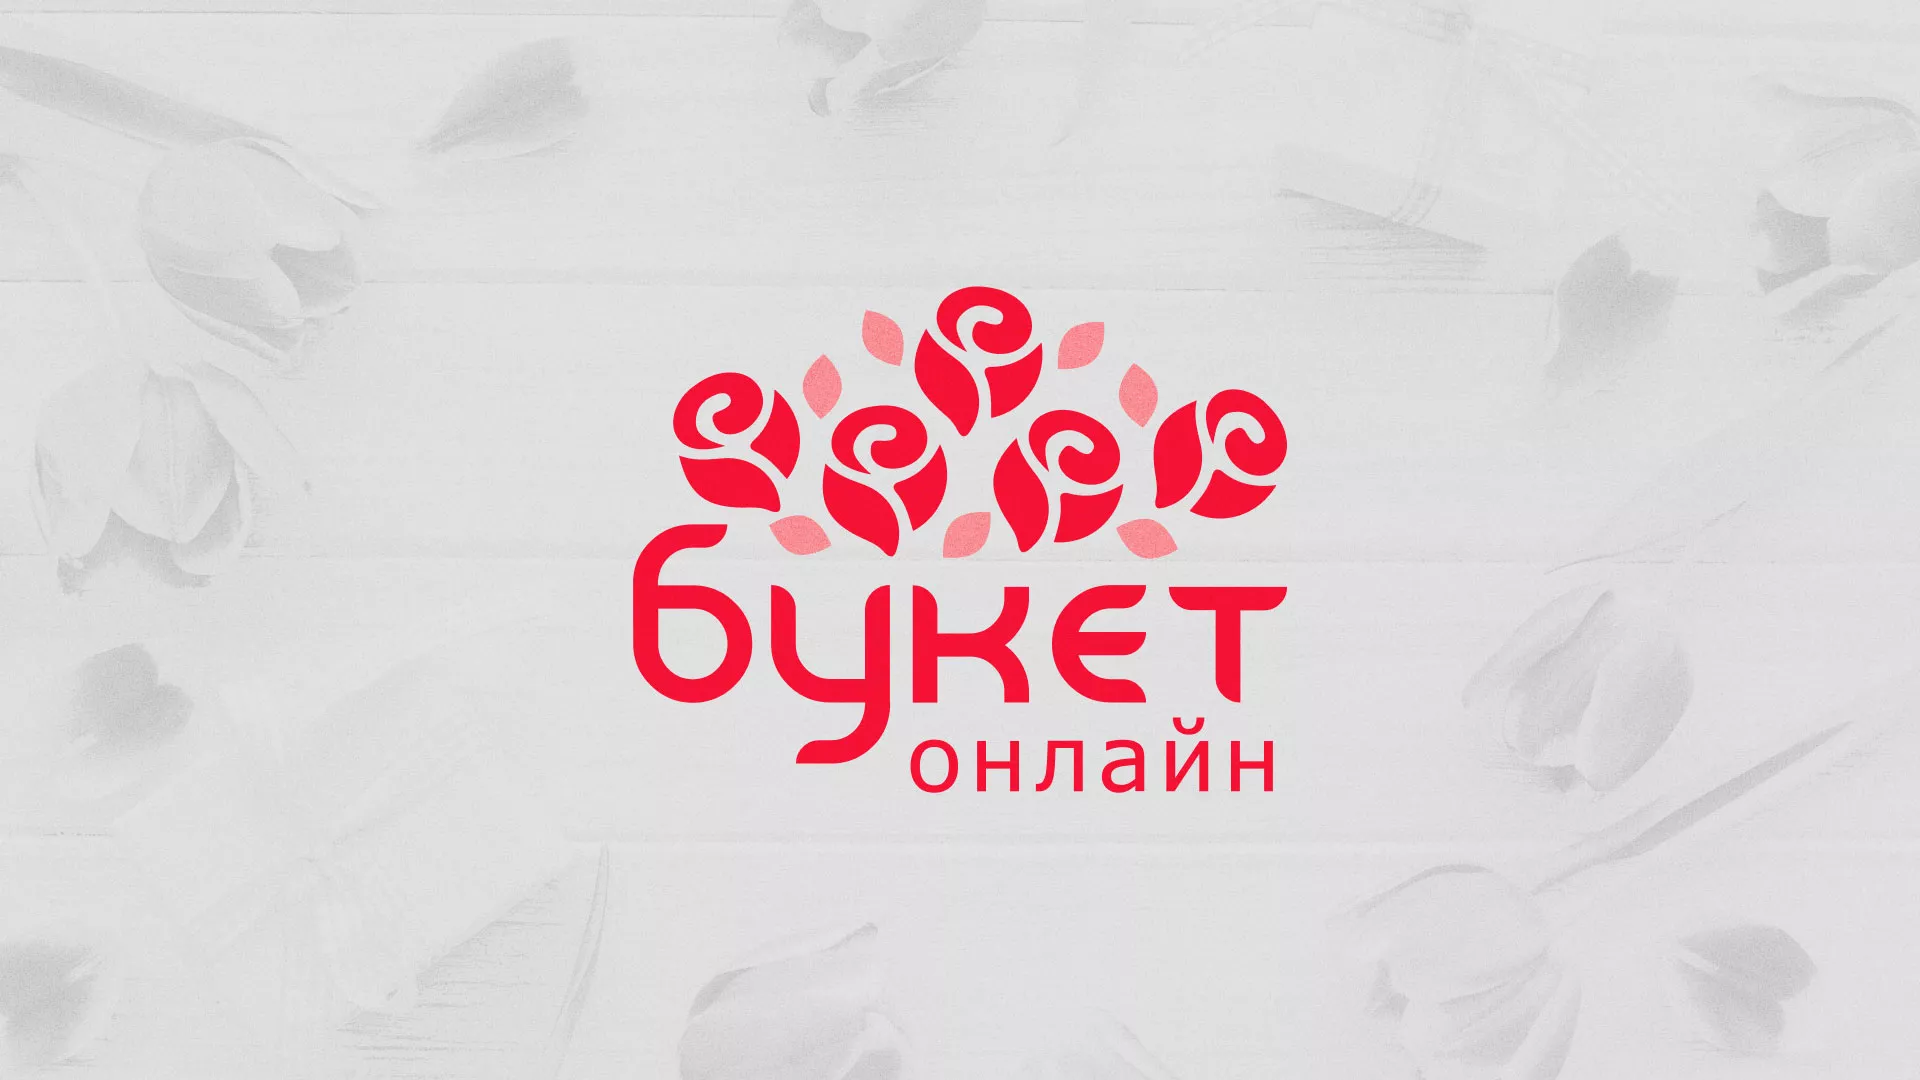 Создание интернет-магазина «Букет-онлайн» по цветам в Химках